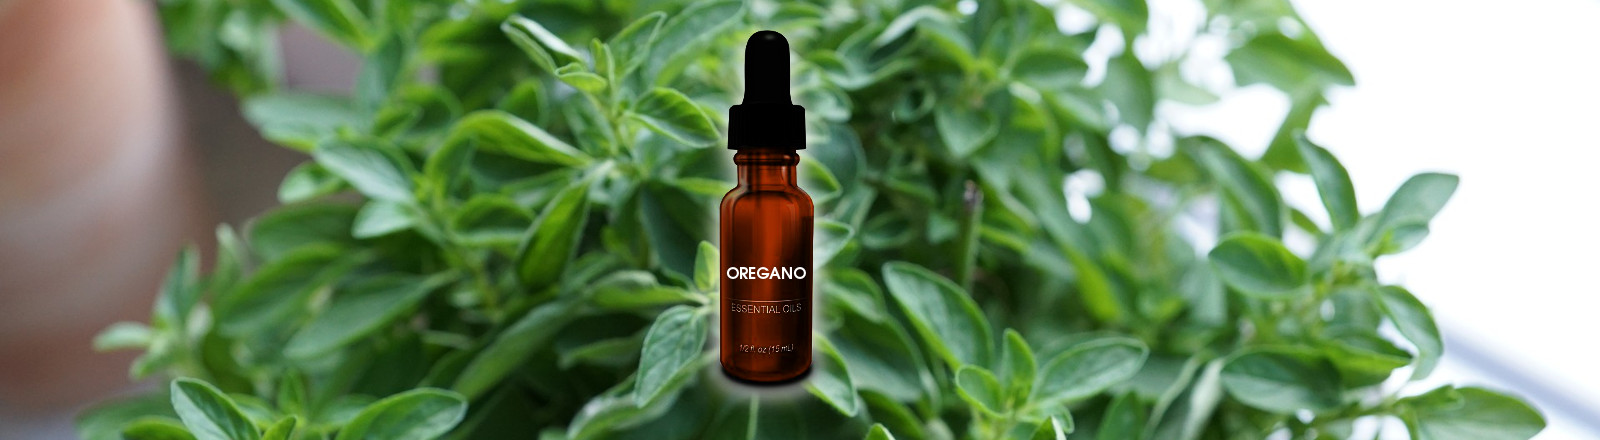 Essential Oil of Oregano Natural Antibiotic